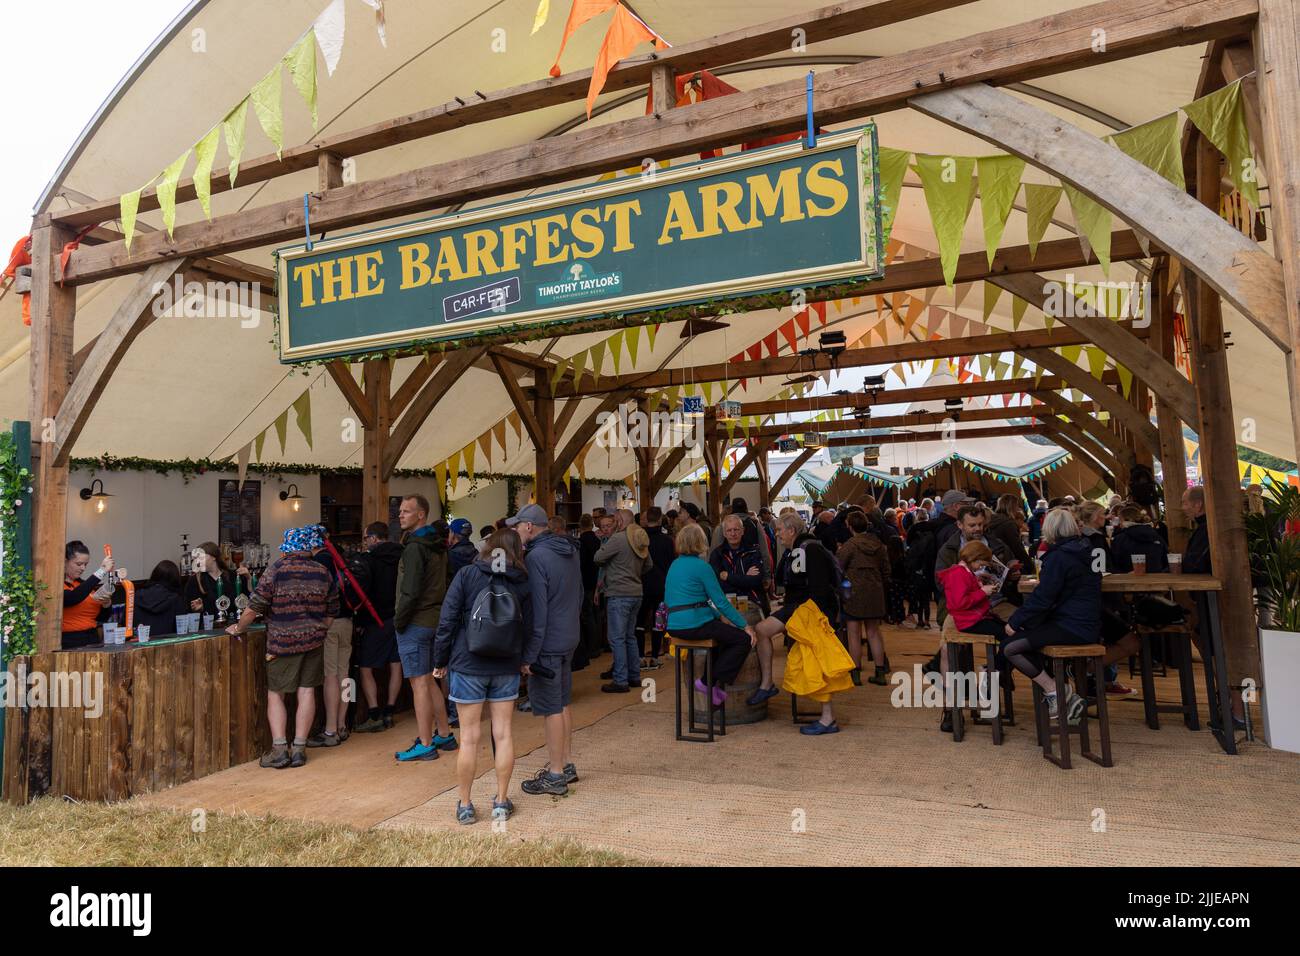 The Barfest Arms, Carfest Banque D'Images